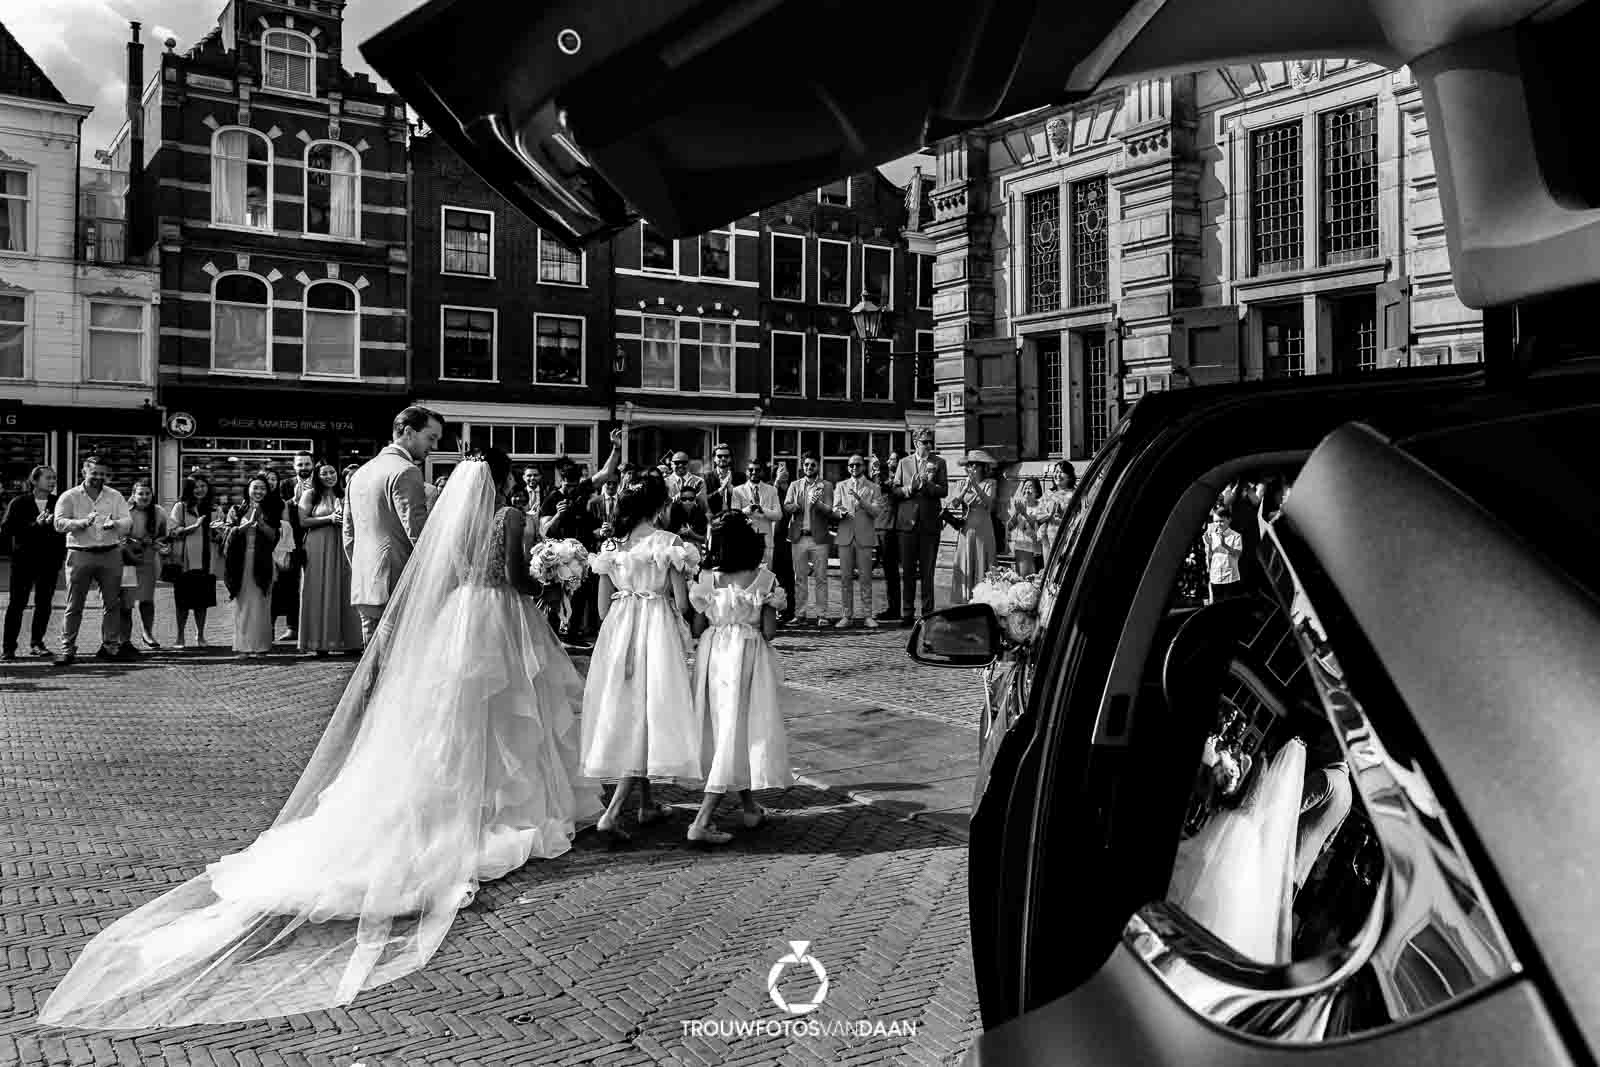 Trouwen in Delft aankomst bruidspaar bij stadhuis